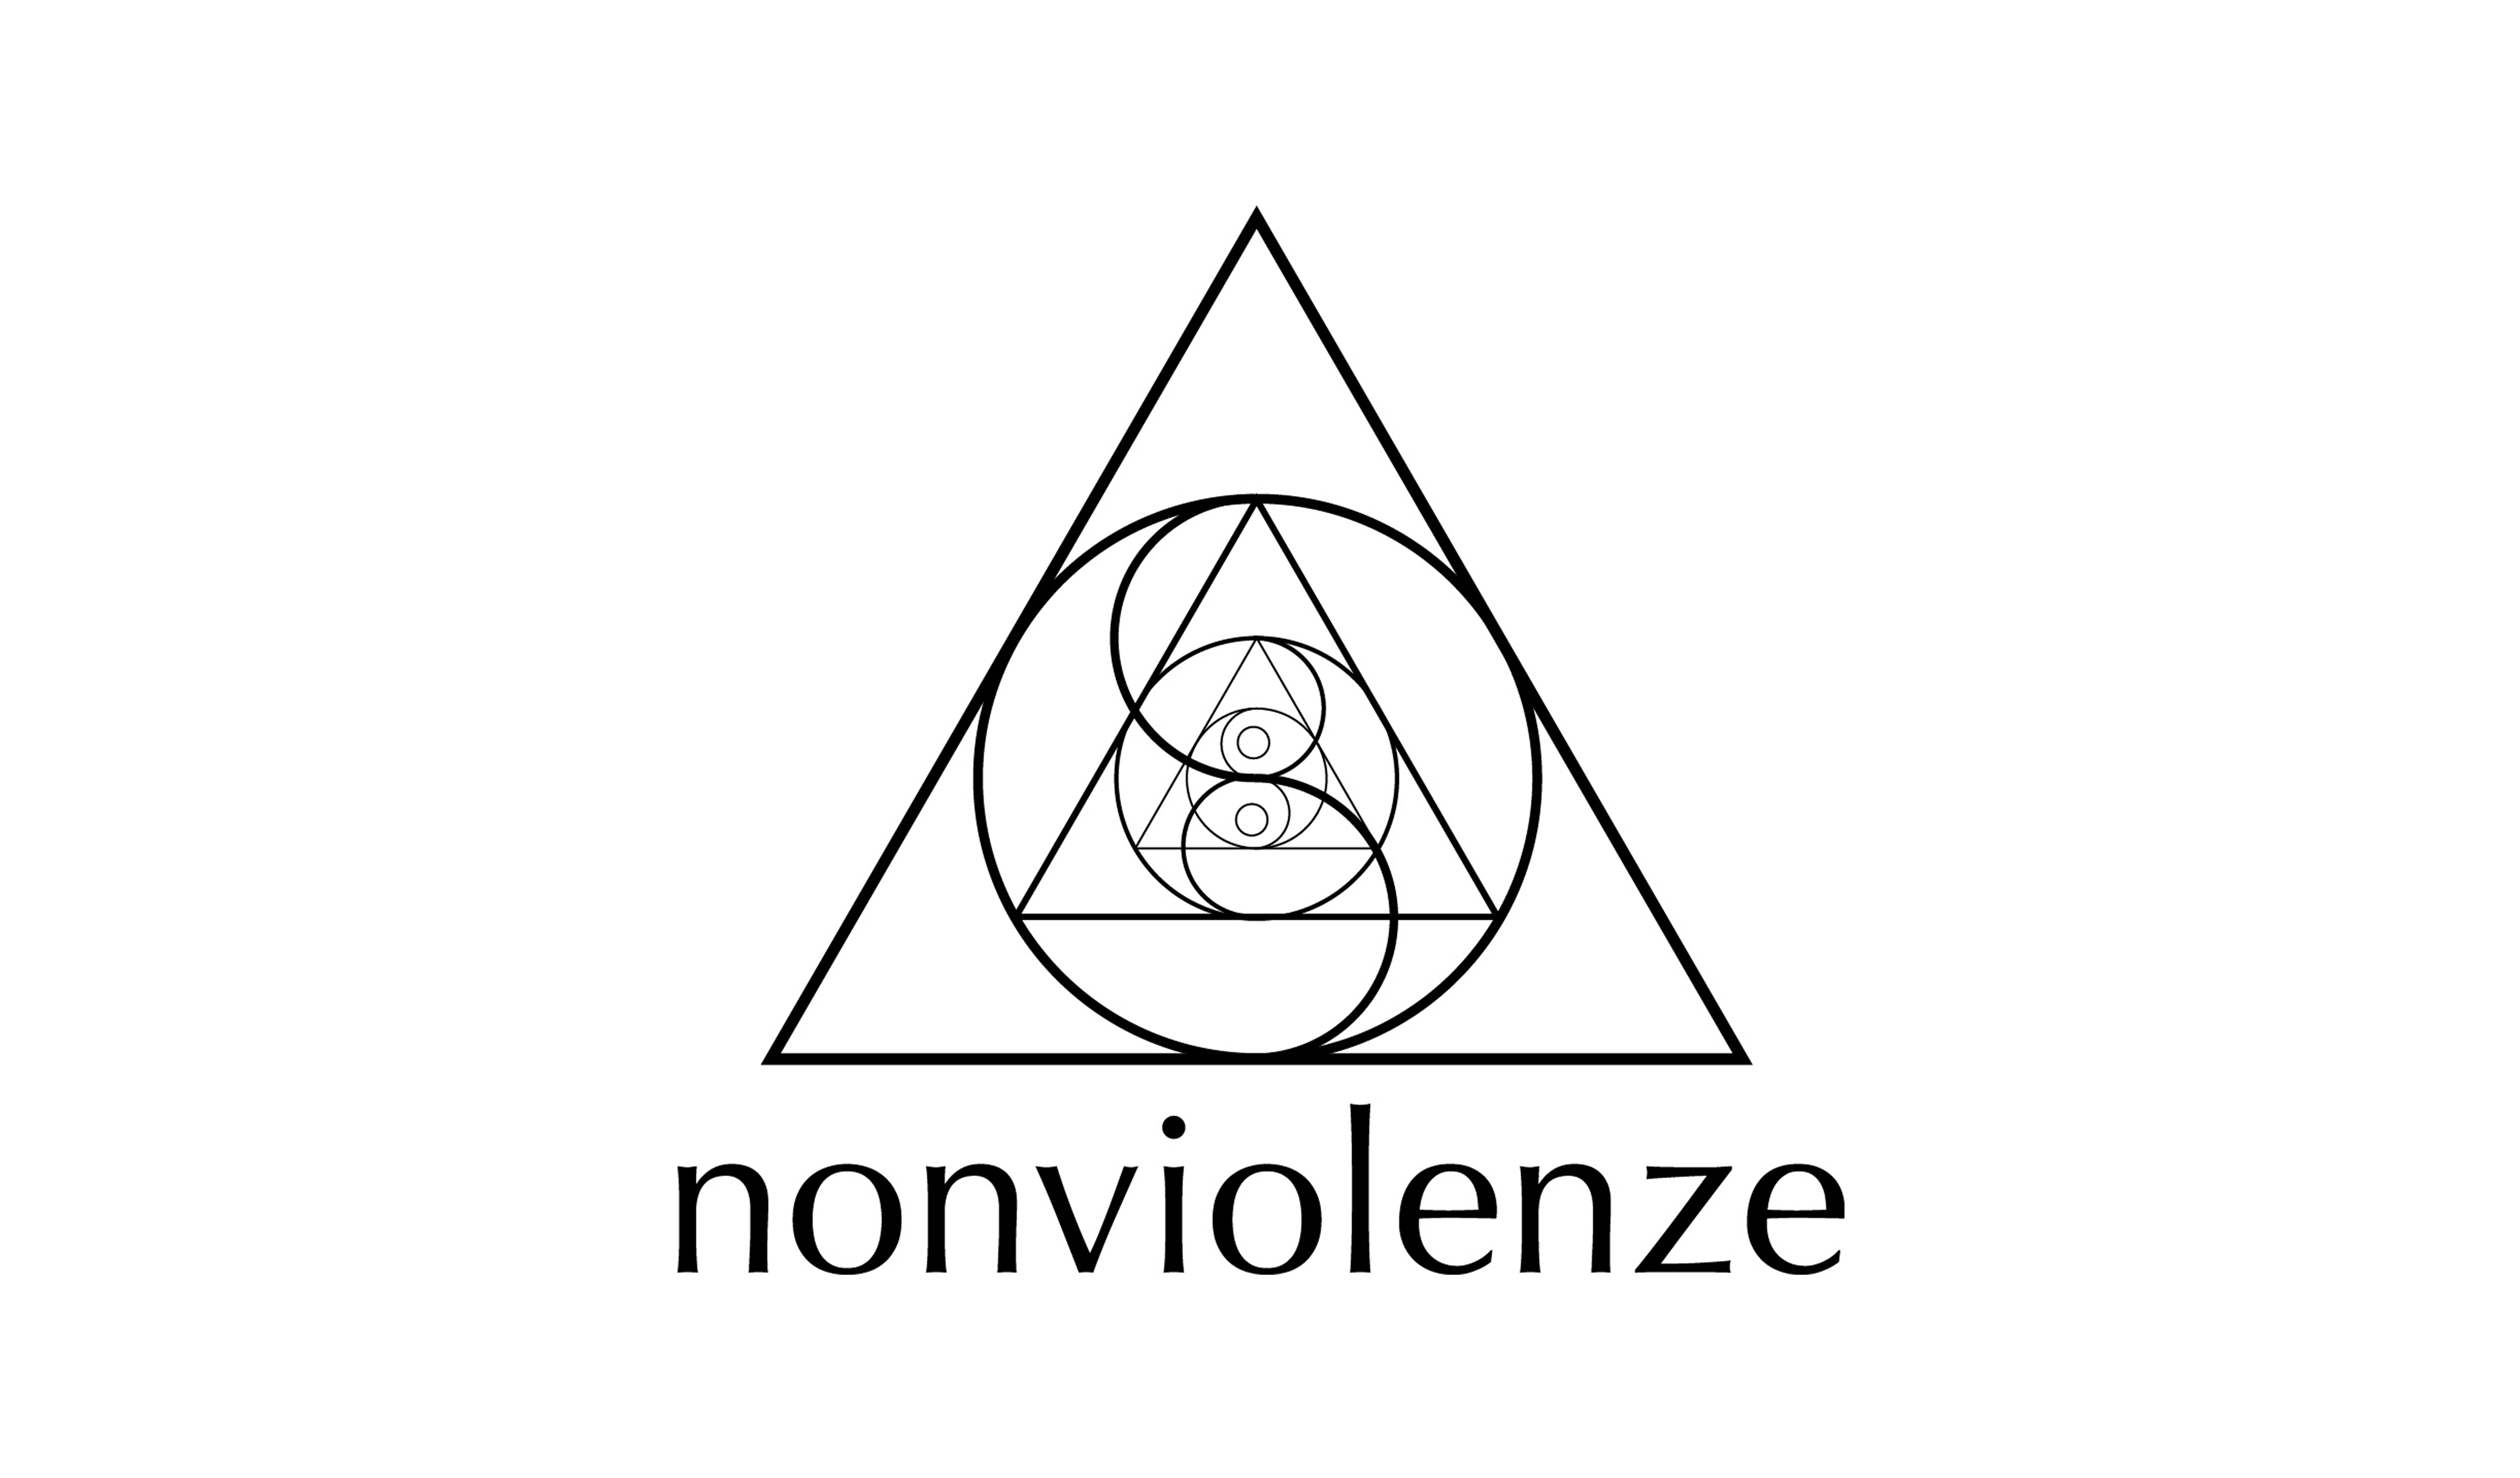 Picture of Nonviolenze logo